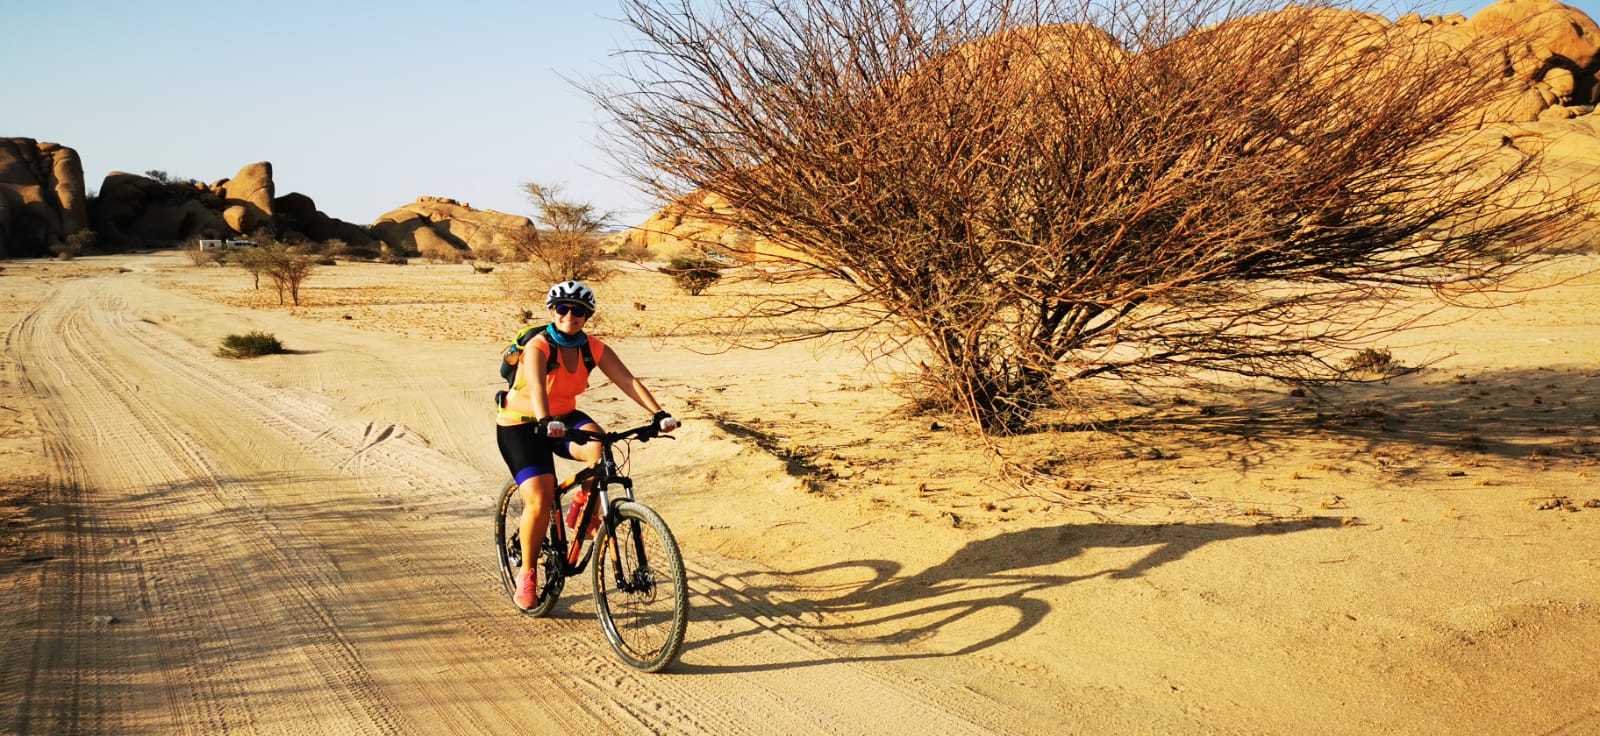 Ricarda während einer Mountainbike-Reise durch Namibia